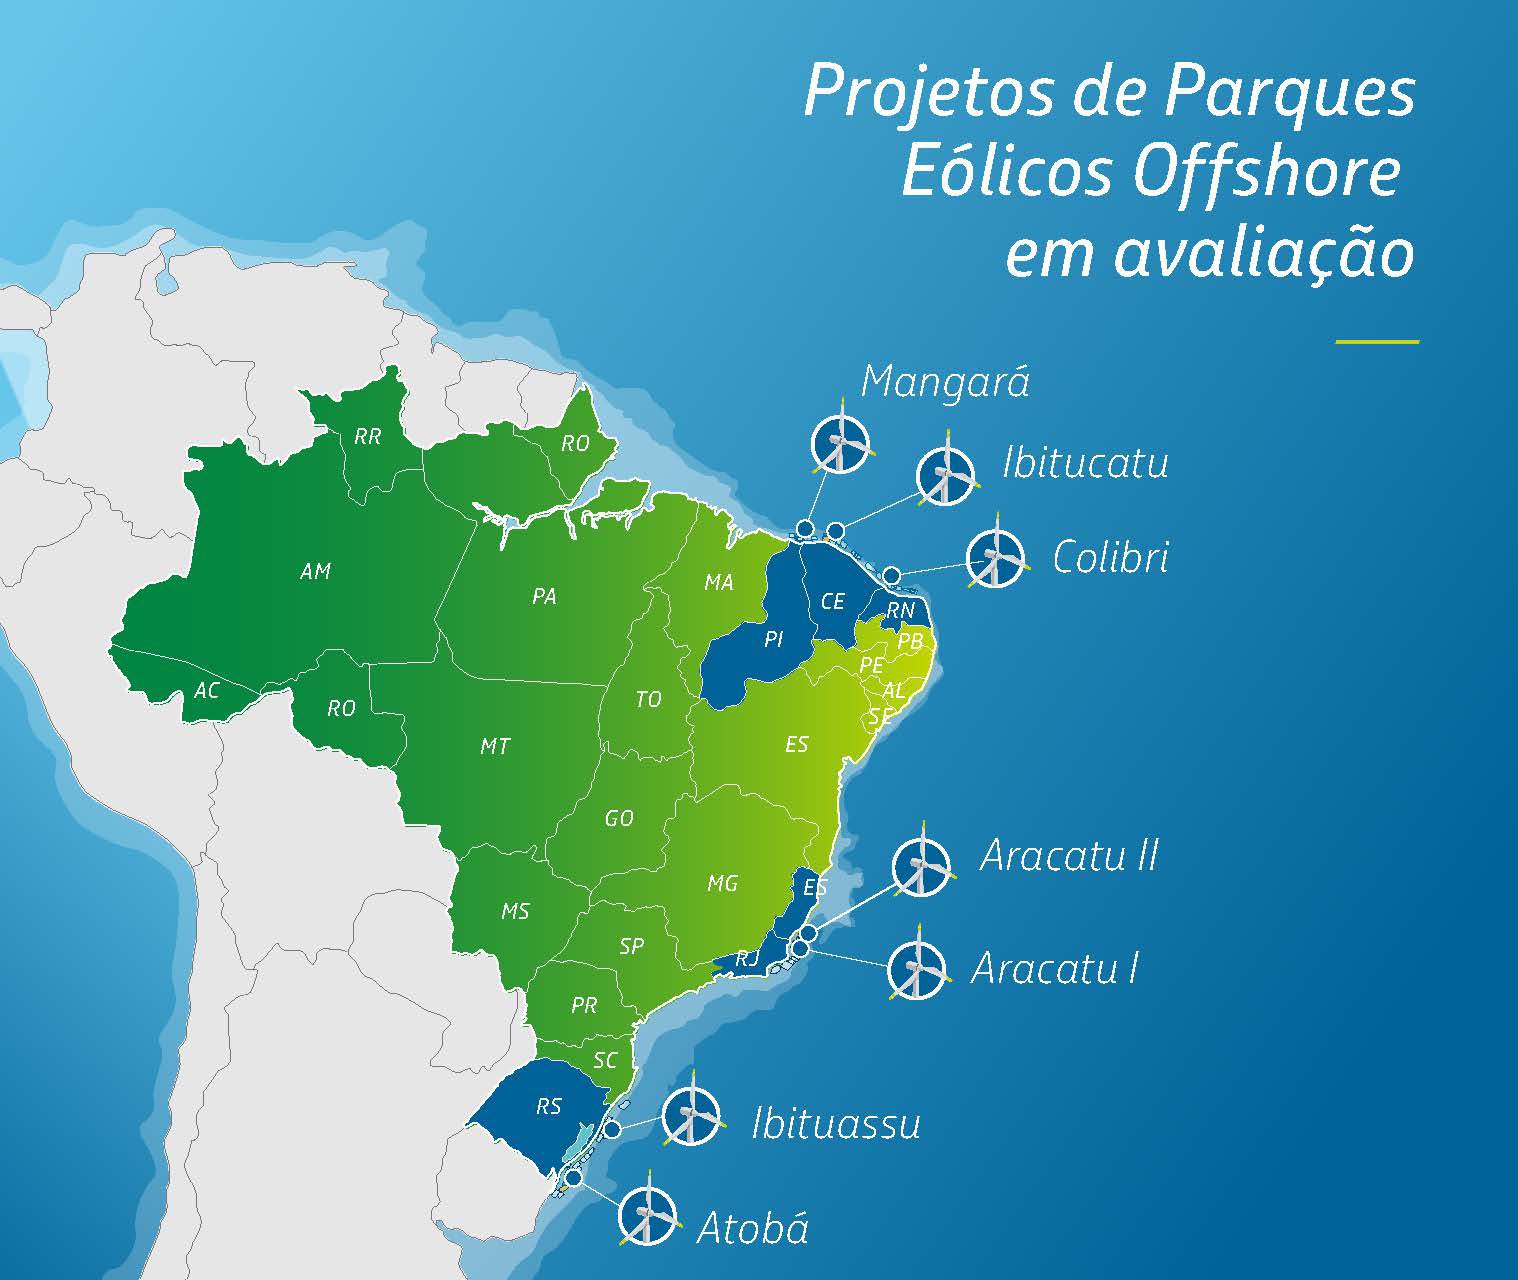 Mapa dos projetos em avaliação pela Petrobras e Equinor